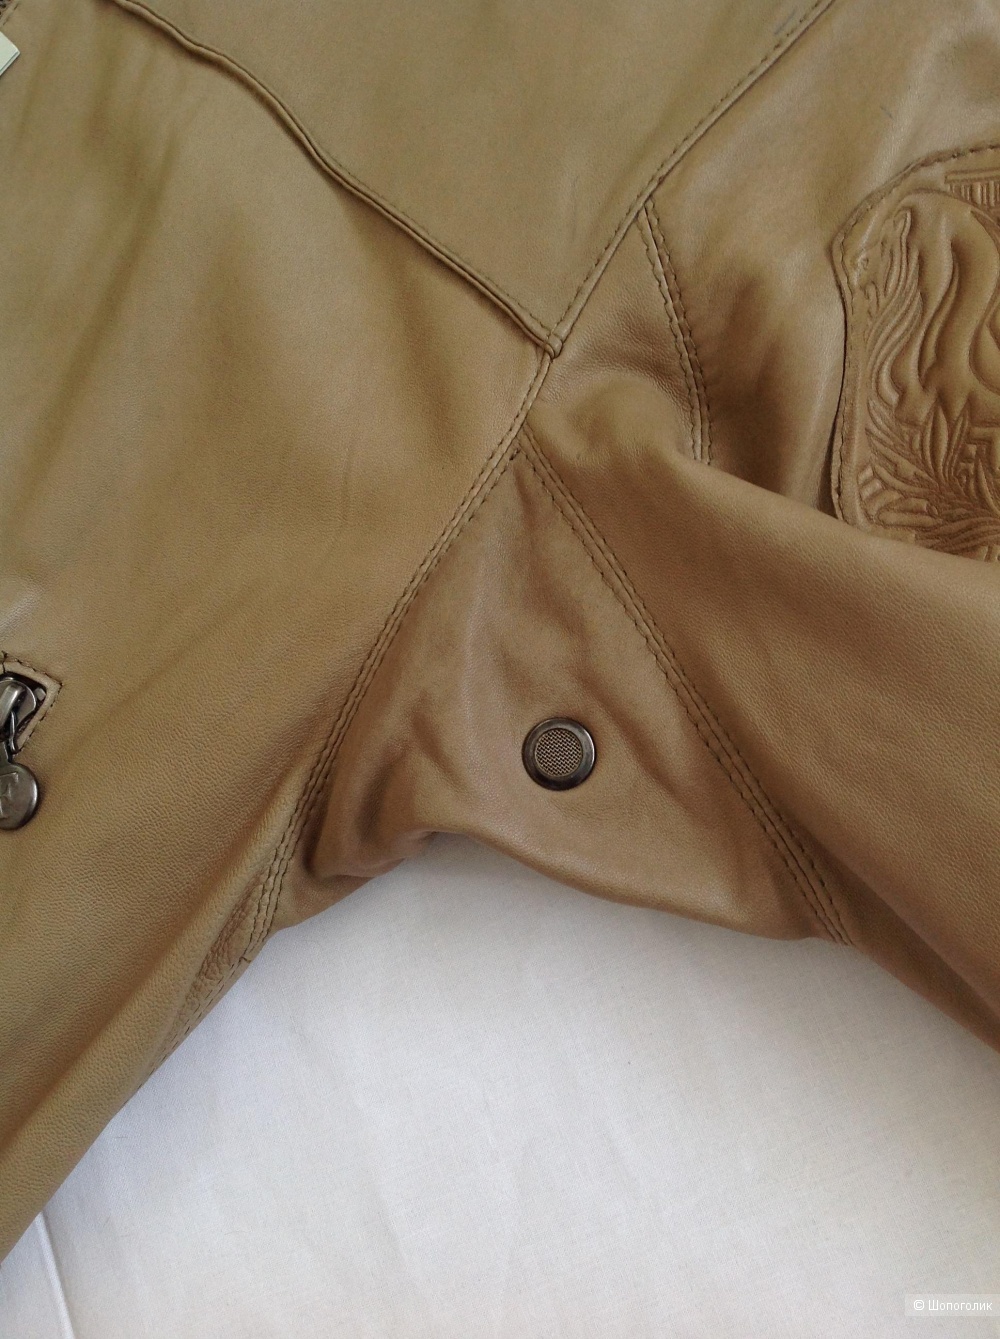 Кожаная куртка бомбер FERRE Milano, размер 48 IT, на 48-50